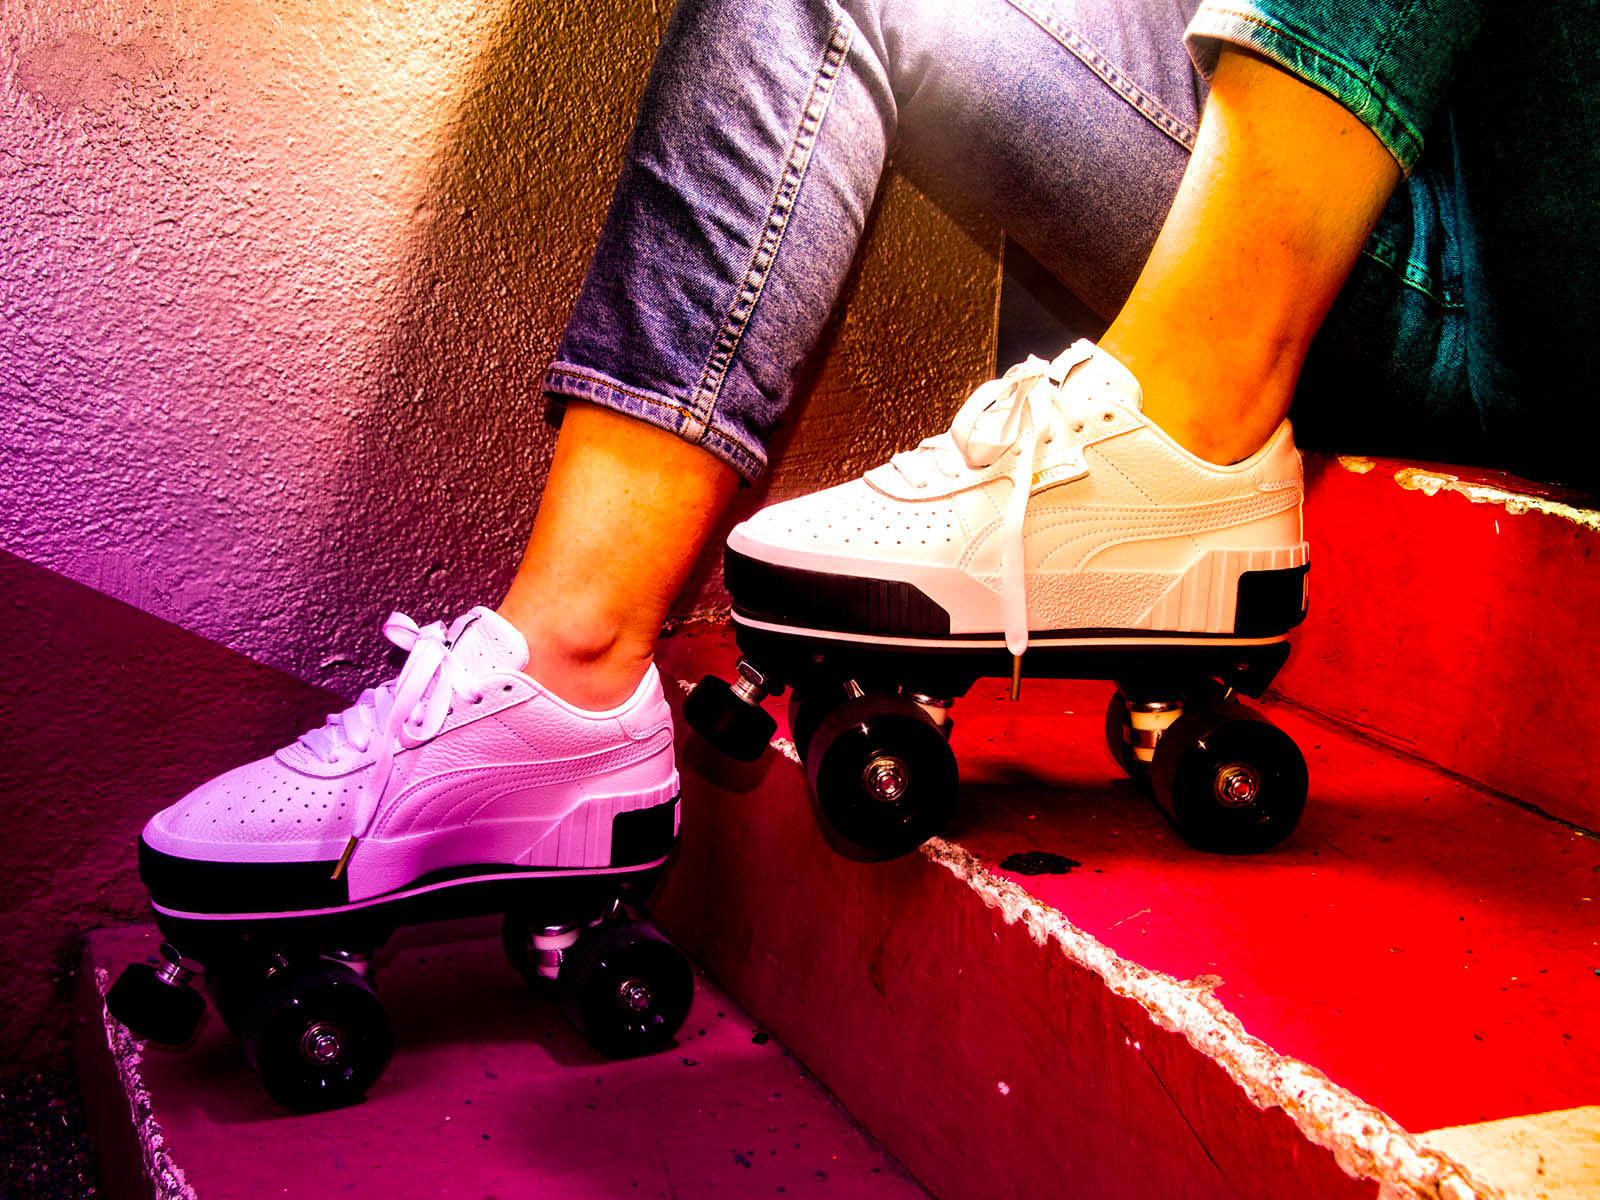 LUXUR Roller Chaussures Roller Skates Chaussures Maroc